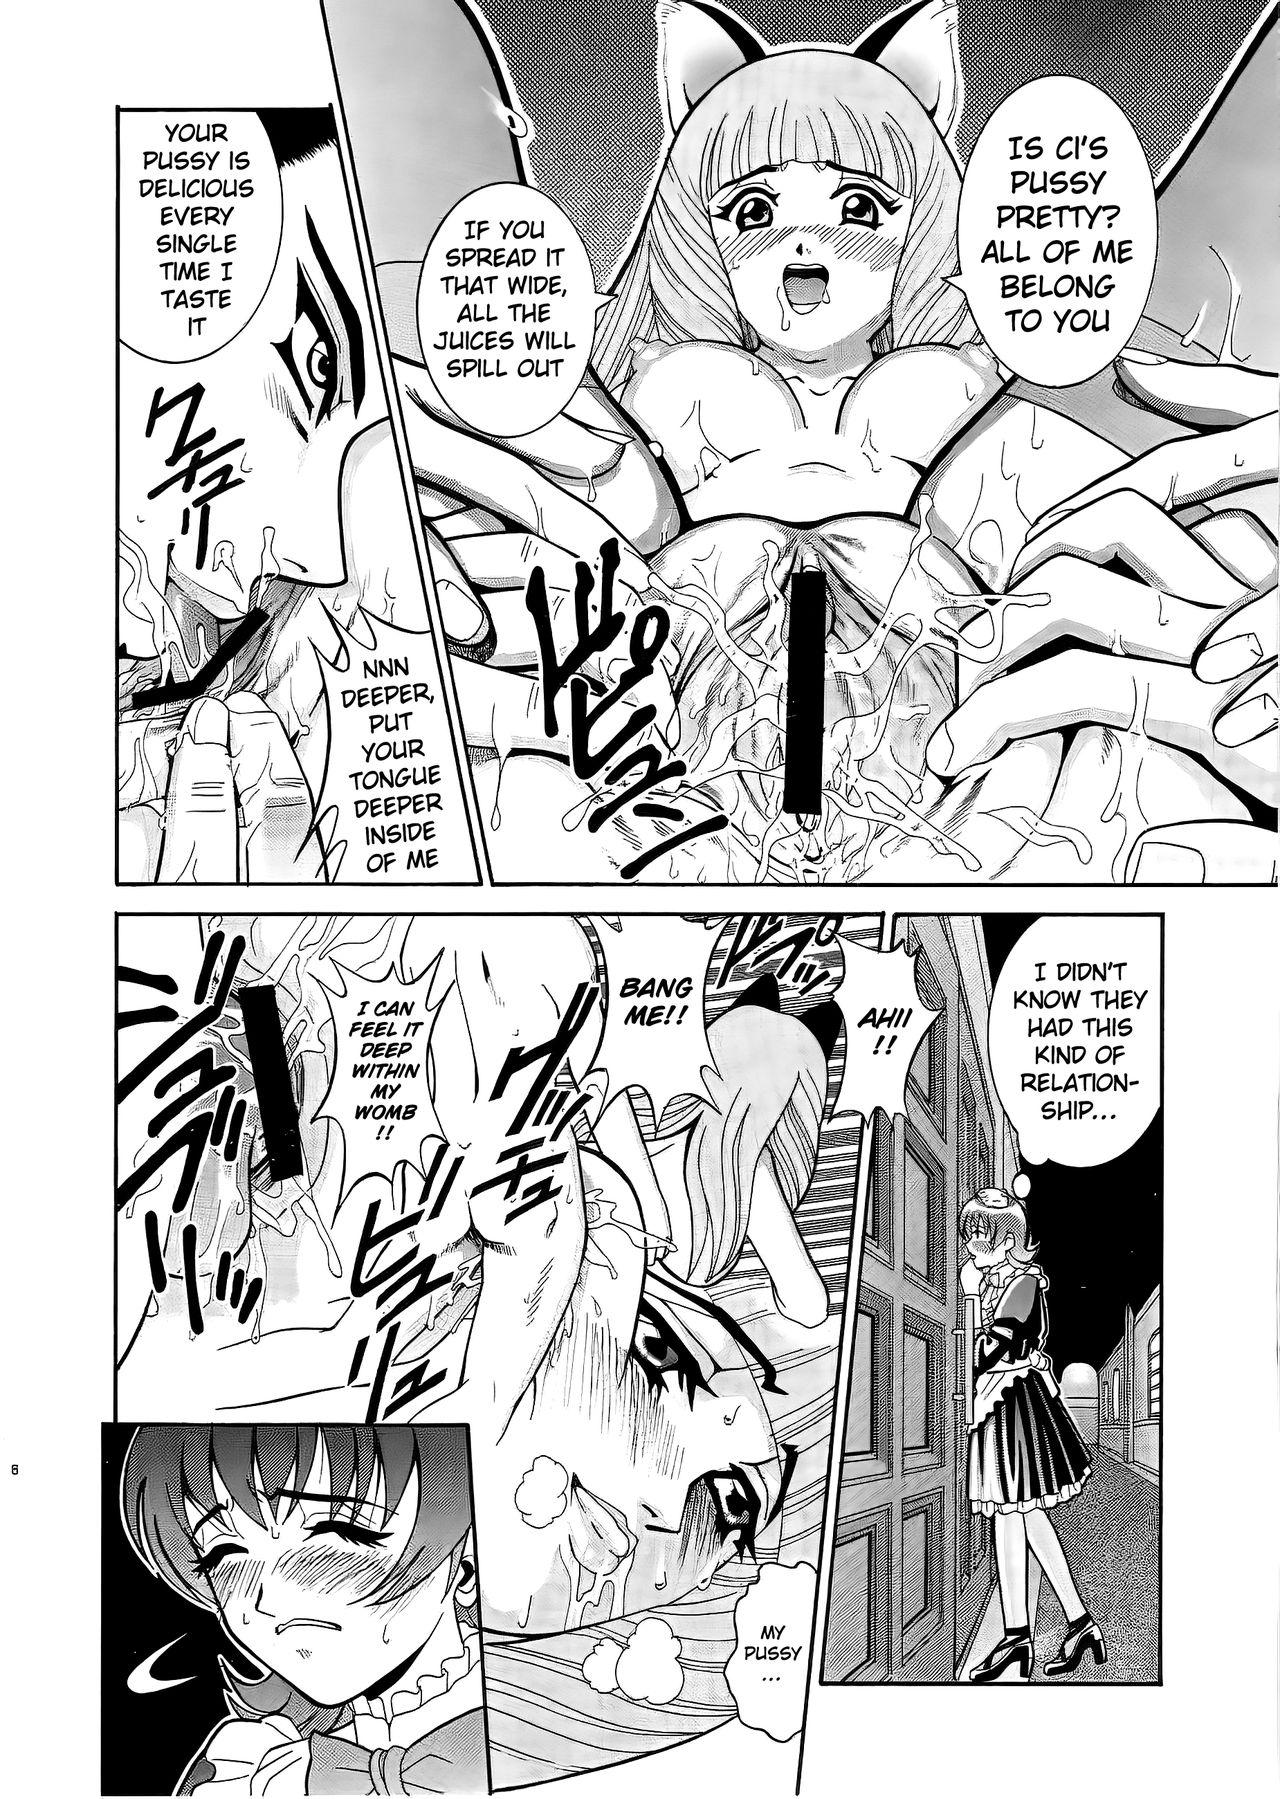 Buttfucking ANGEL PAIN 6 - Sakura taisen | sakura wars Uniform - Page 7